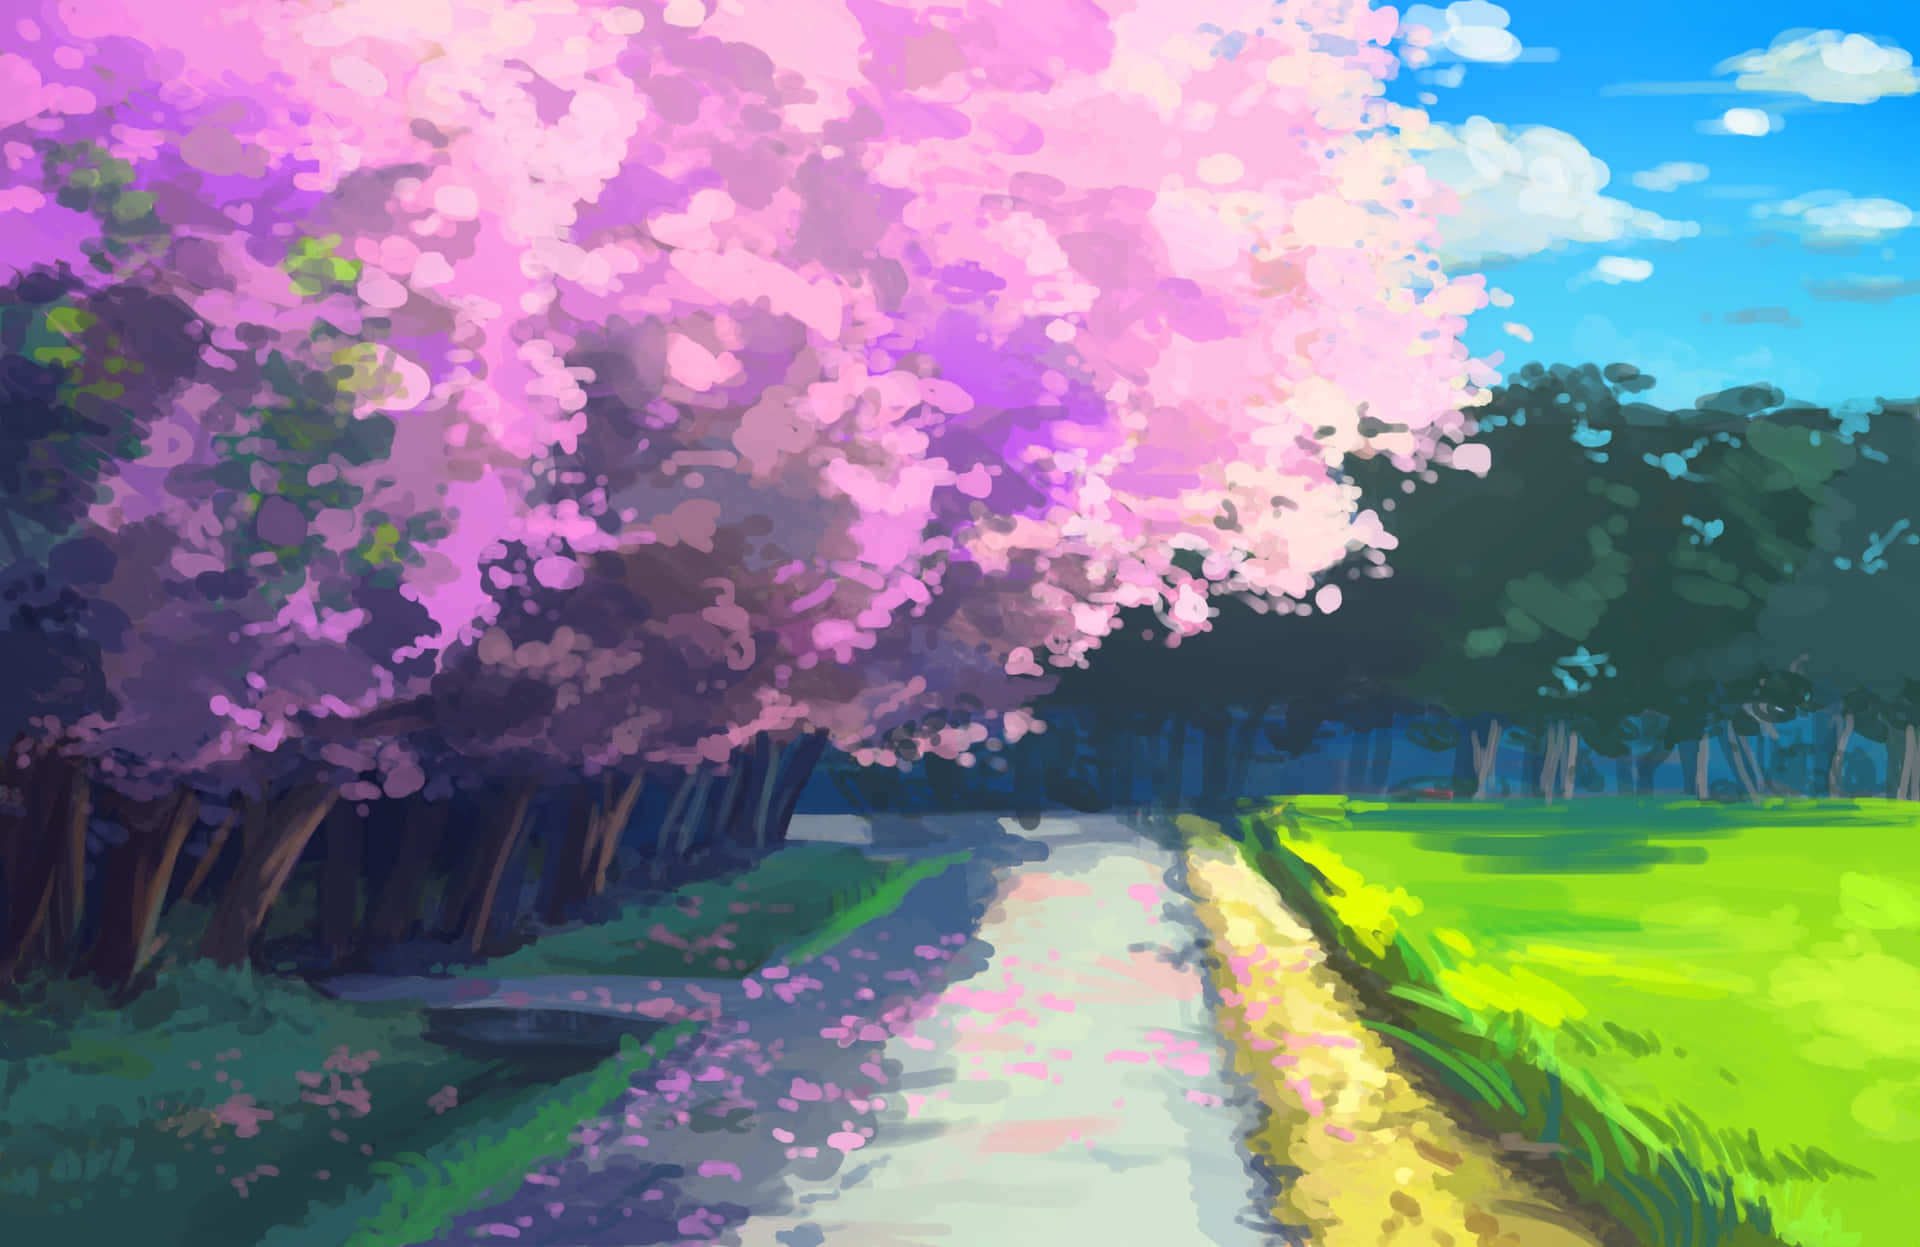 Unpaesaggio Tranquillo Di Un Cielo Viola E Bianco A Tema Anime.